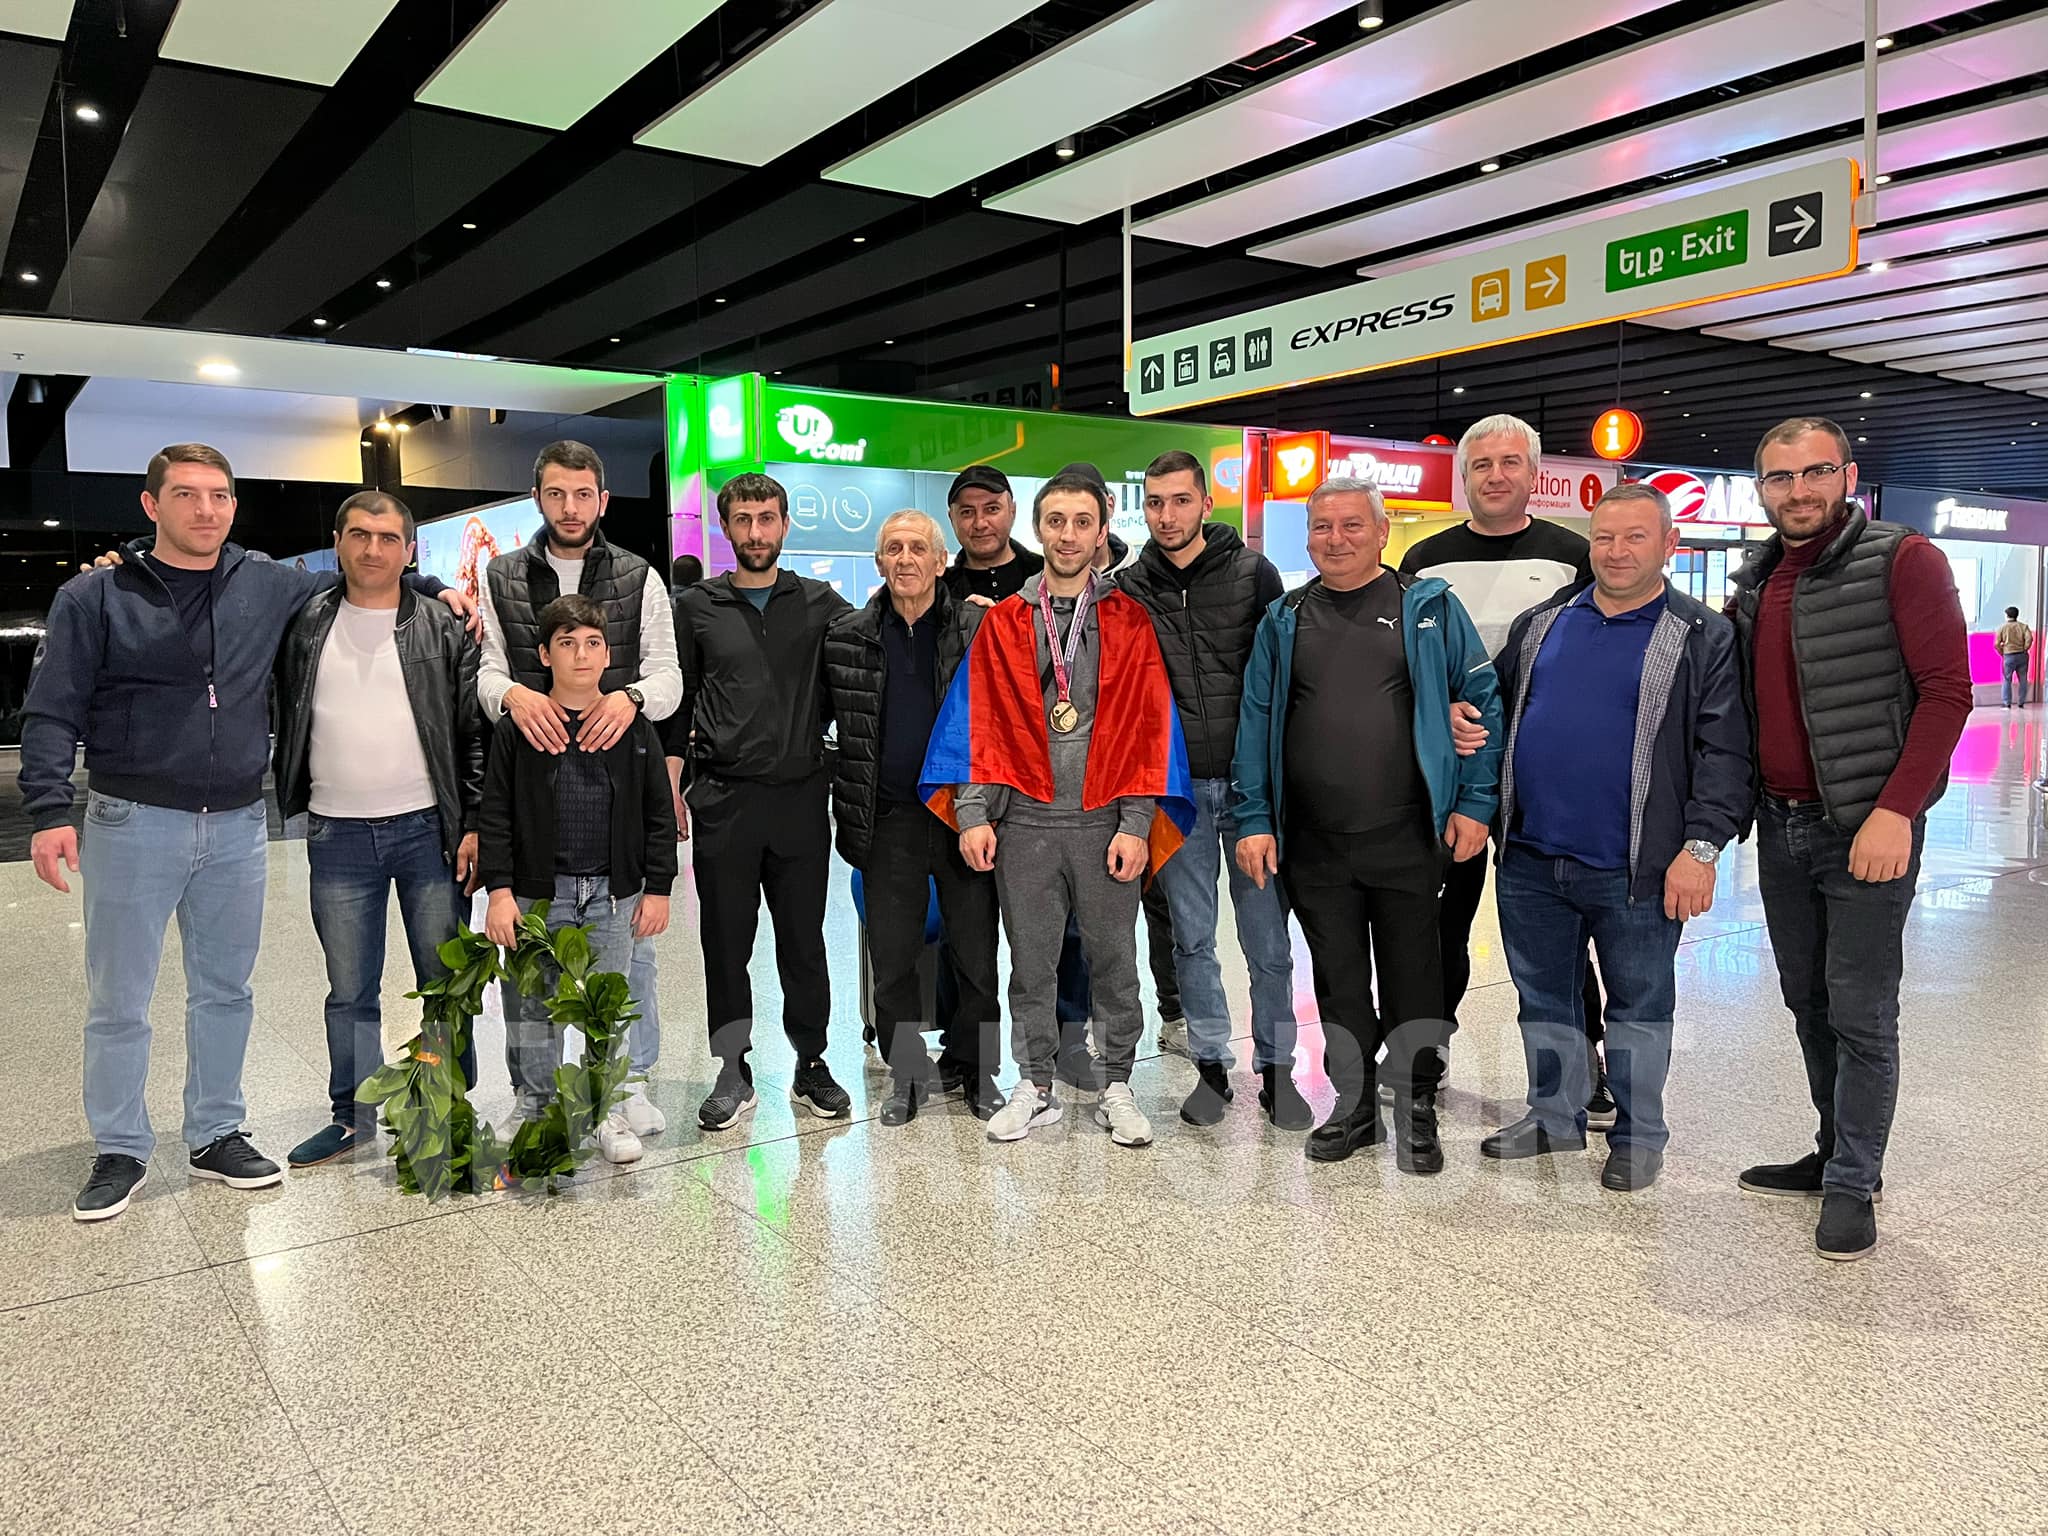 Թուրքիայից վերադարձած Եվրոպայի չեմպիոն Արթուր Դավթյանին և հավաքականին դիմավորել են զուռնա-դհոլով